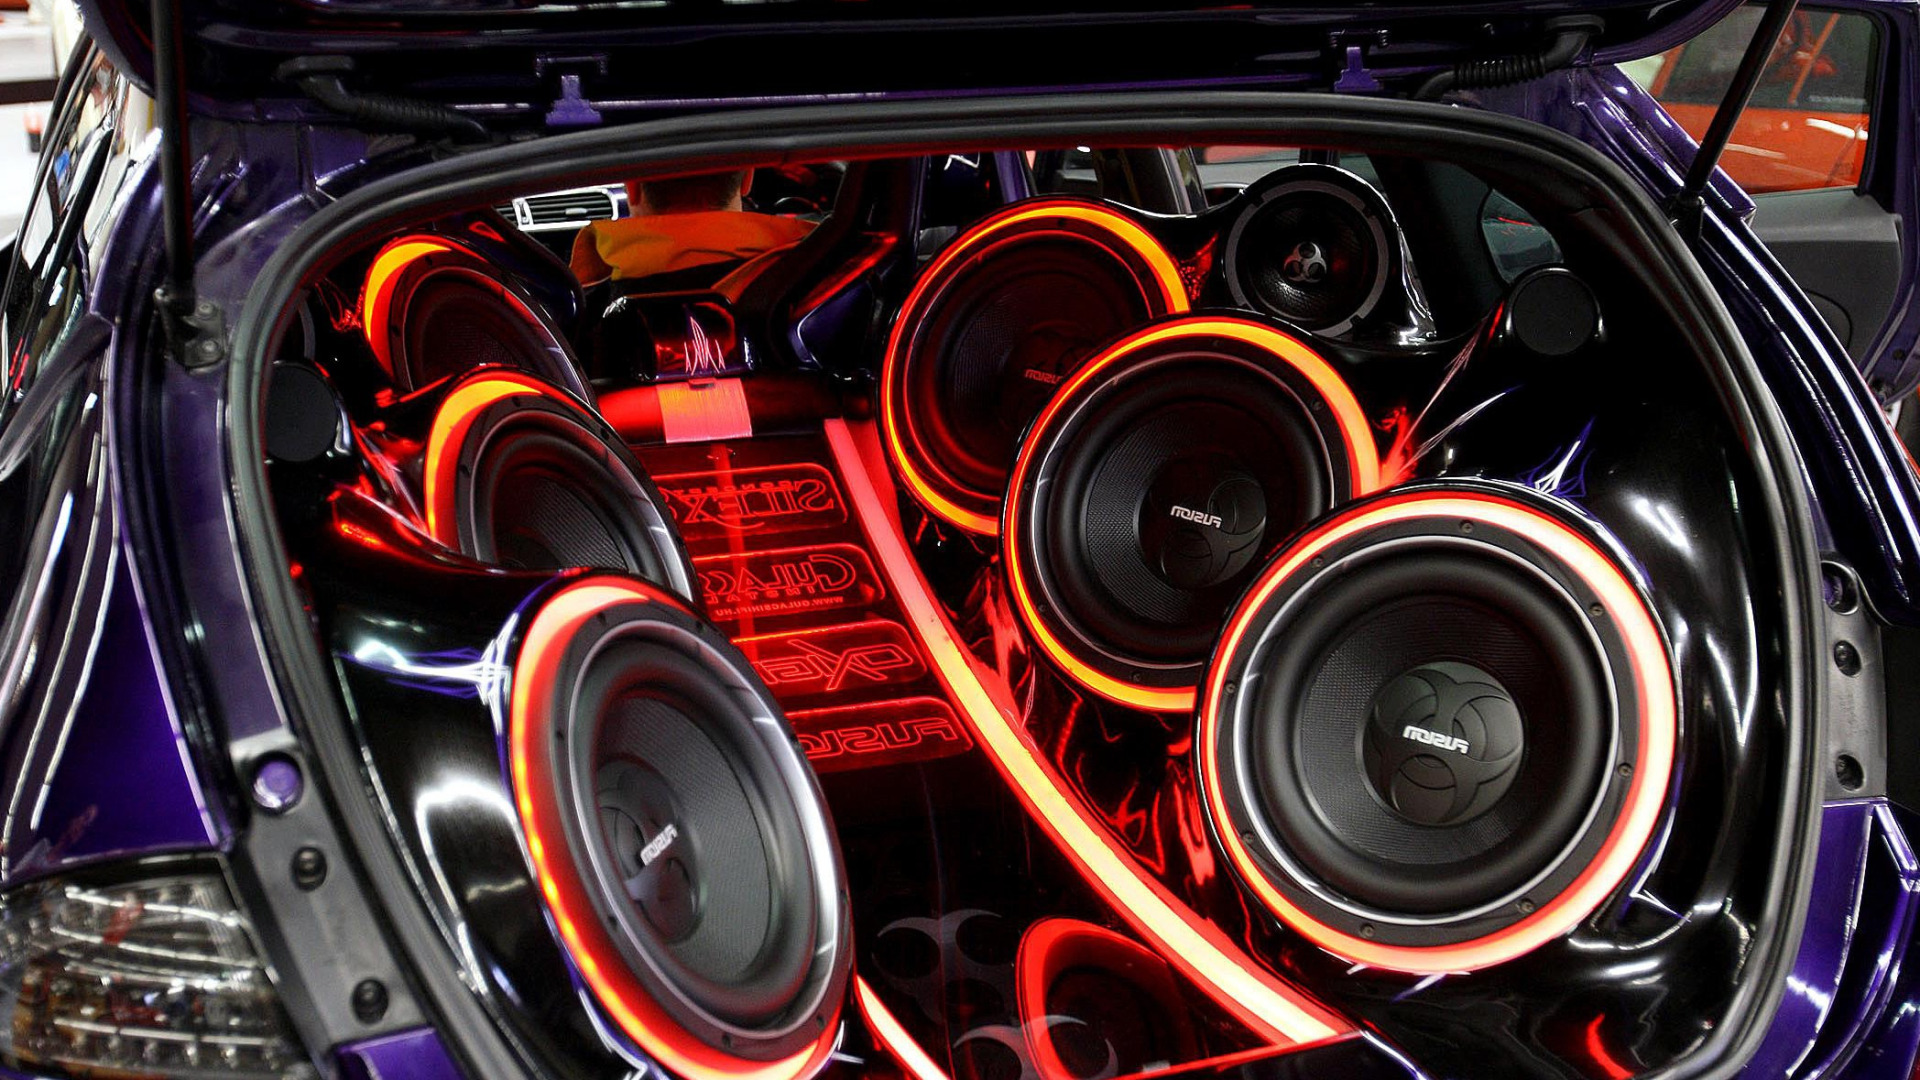 Мощнейший басс в мире. Мидбасс 10 саб. Car Audio в Bentley Continental динамики. Мощные колонки в машину. Автозвук сабвуфер.